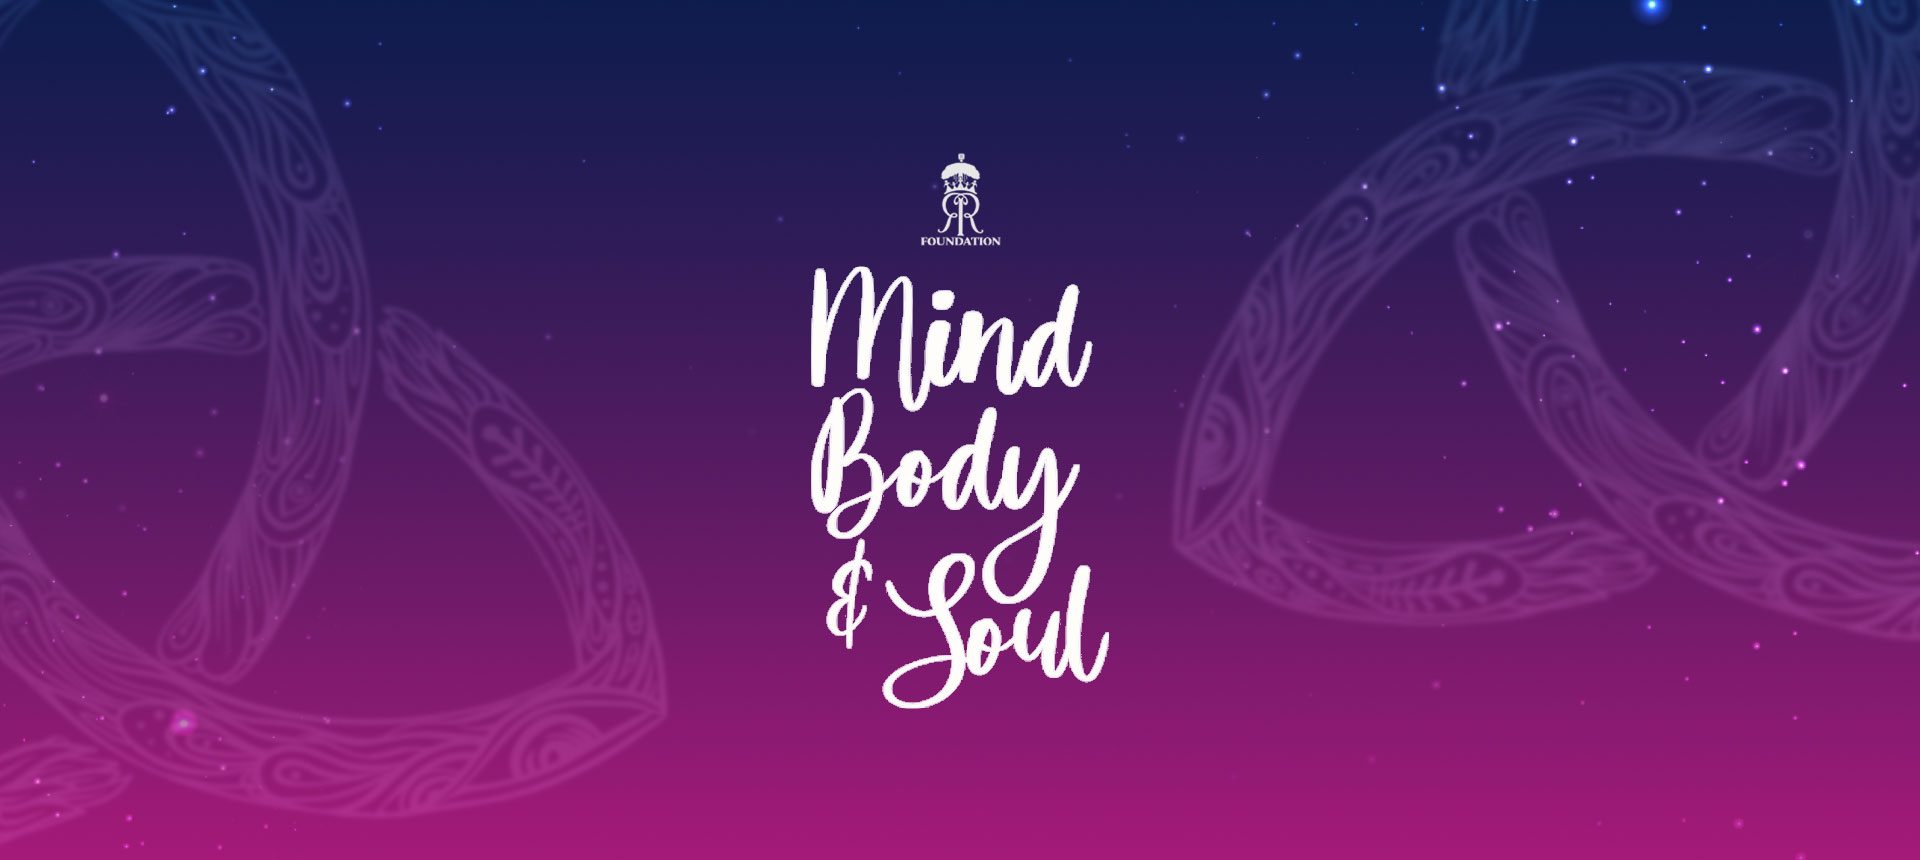 Mind, body & soul